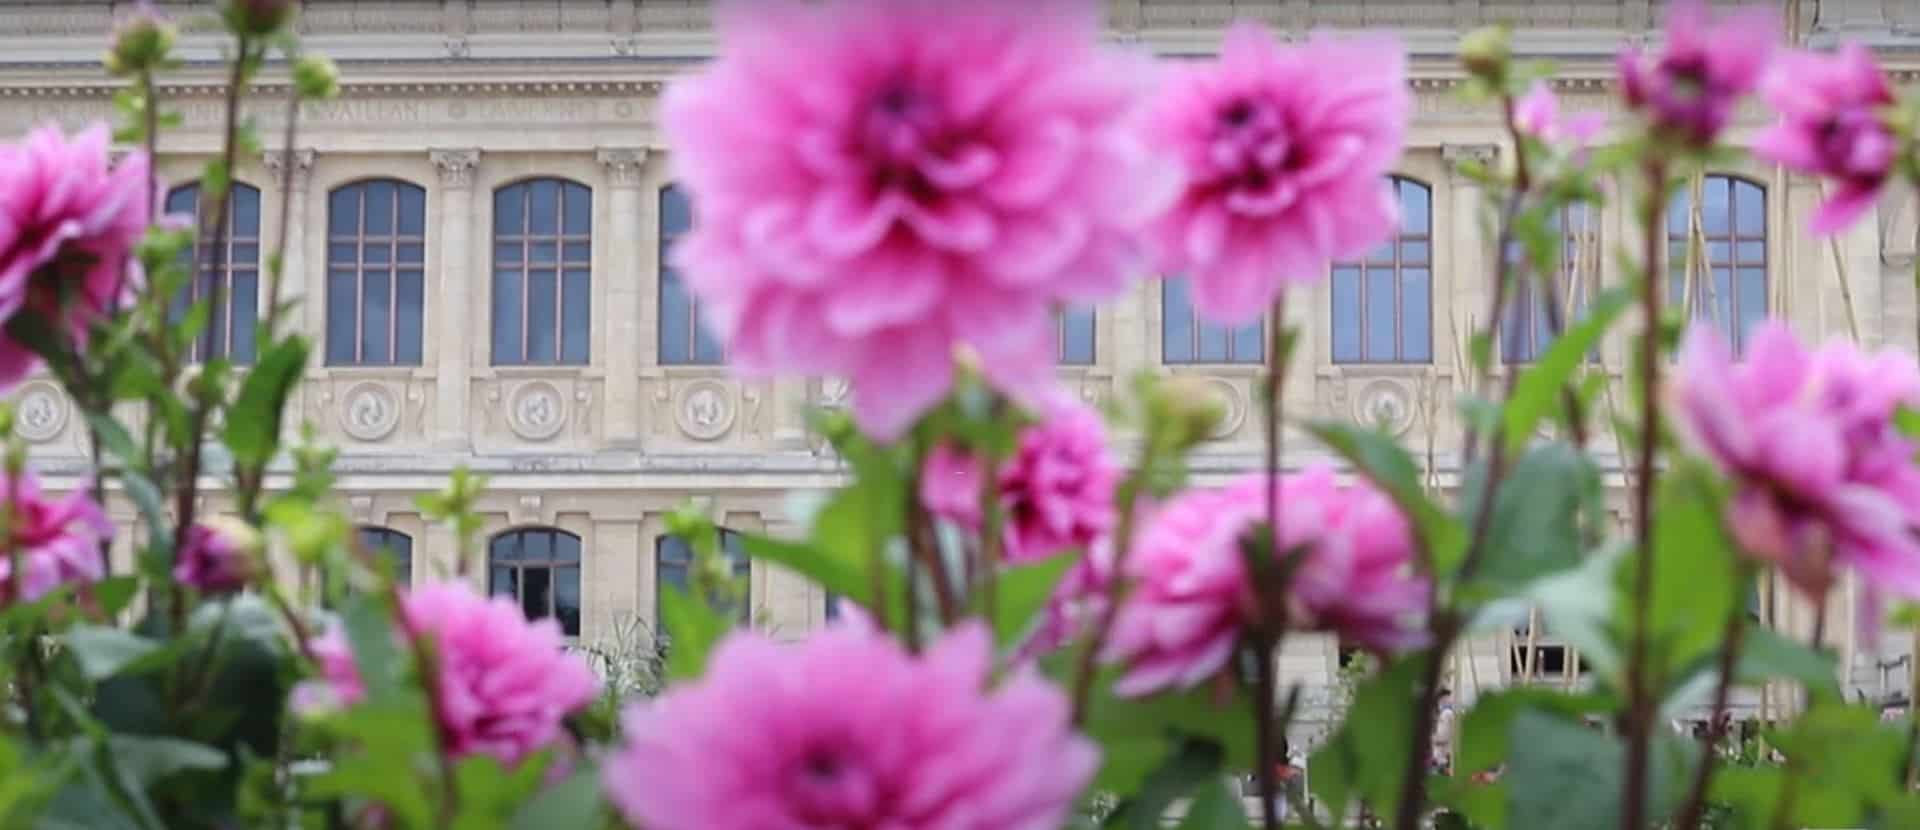 No shortage of gardens in Paris